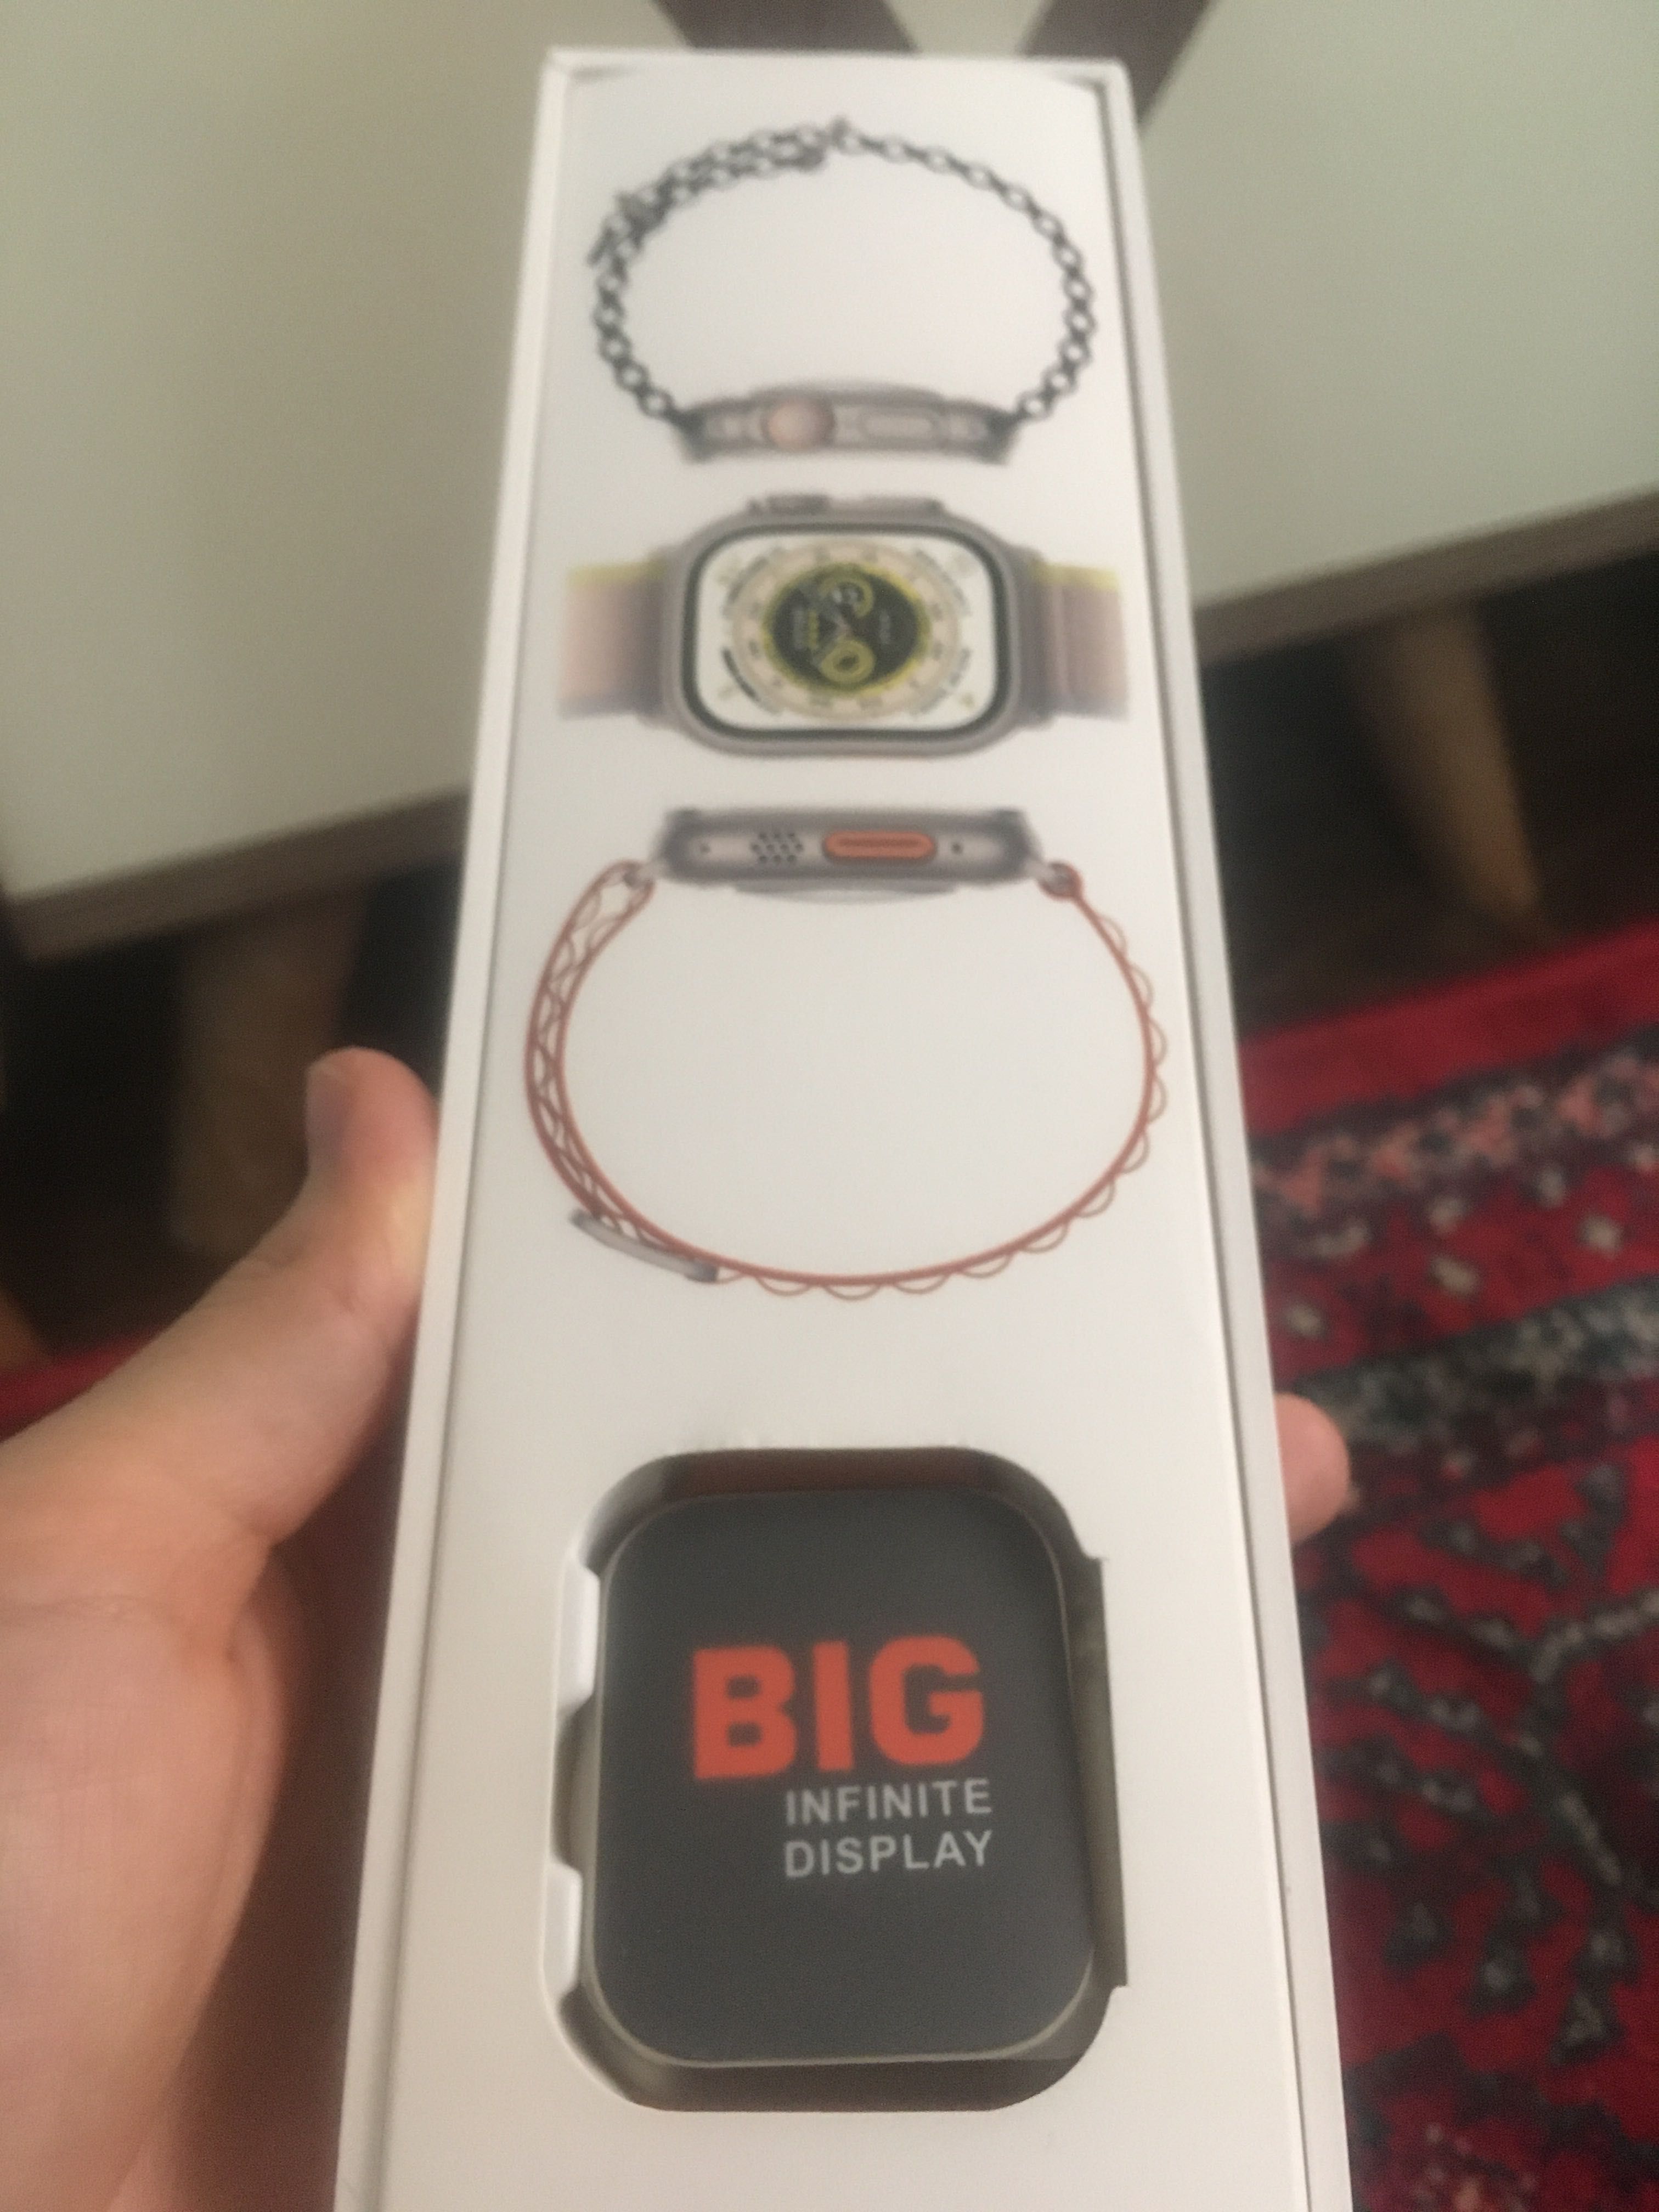 Smart watch ws8 ultra